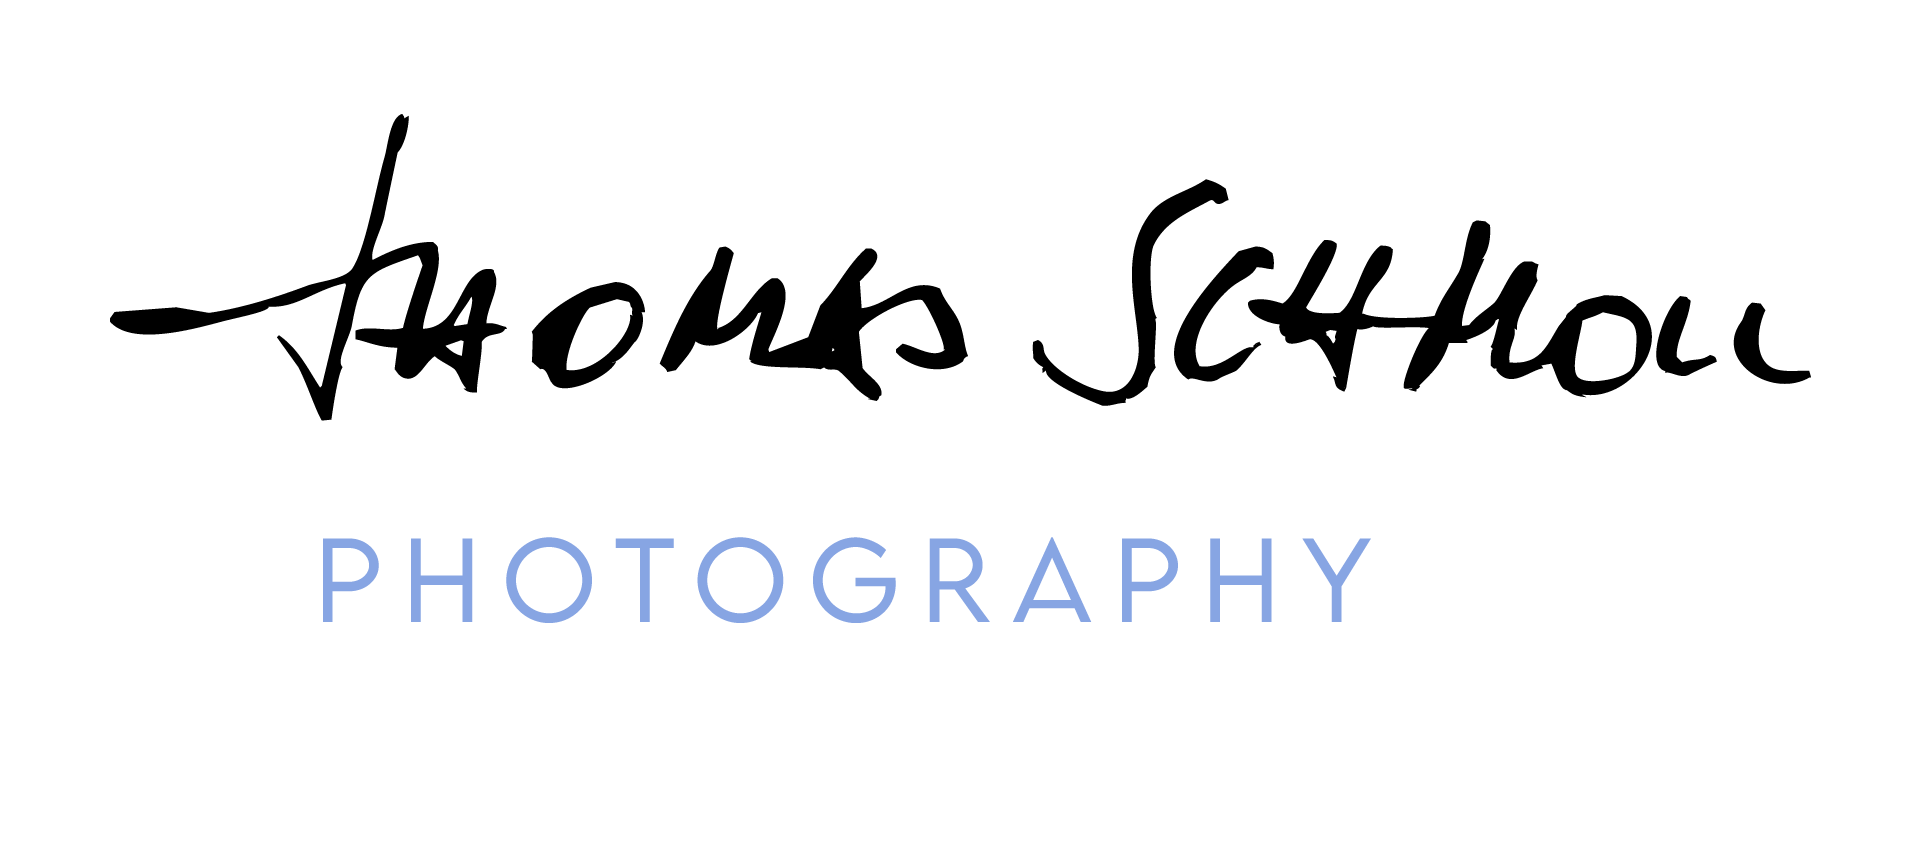 Thomas Schmoll Photography